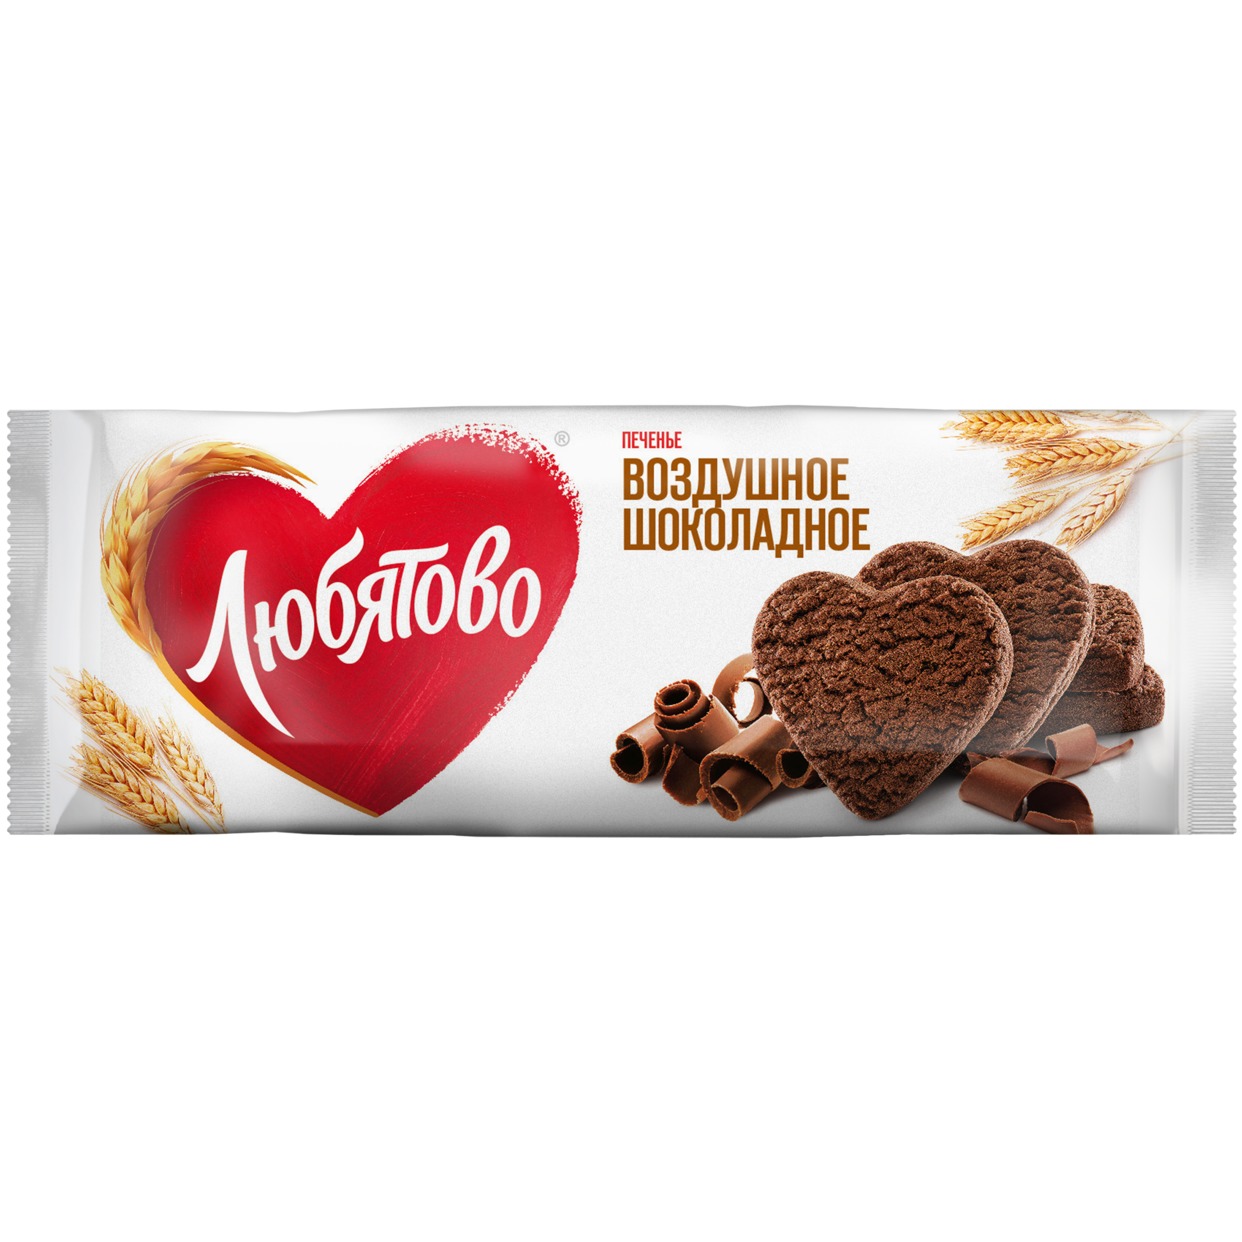 Печенье Воздушное шоколадное Любятово 200 г по акции в Пятерочке